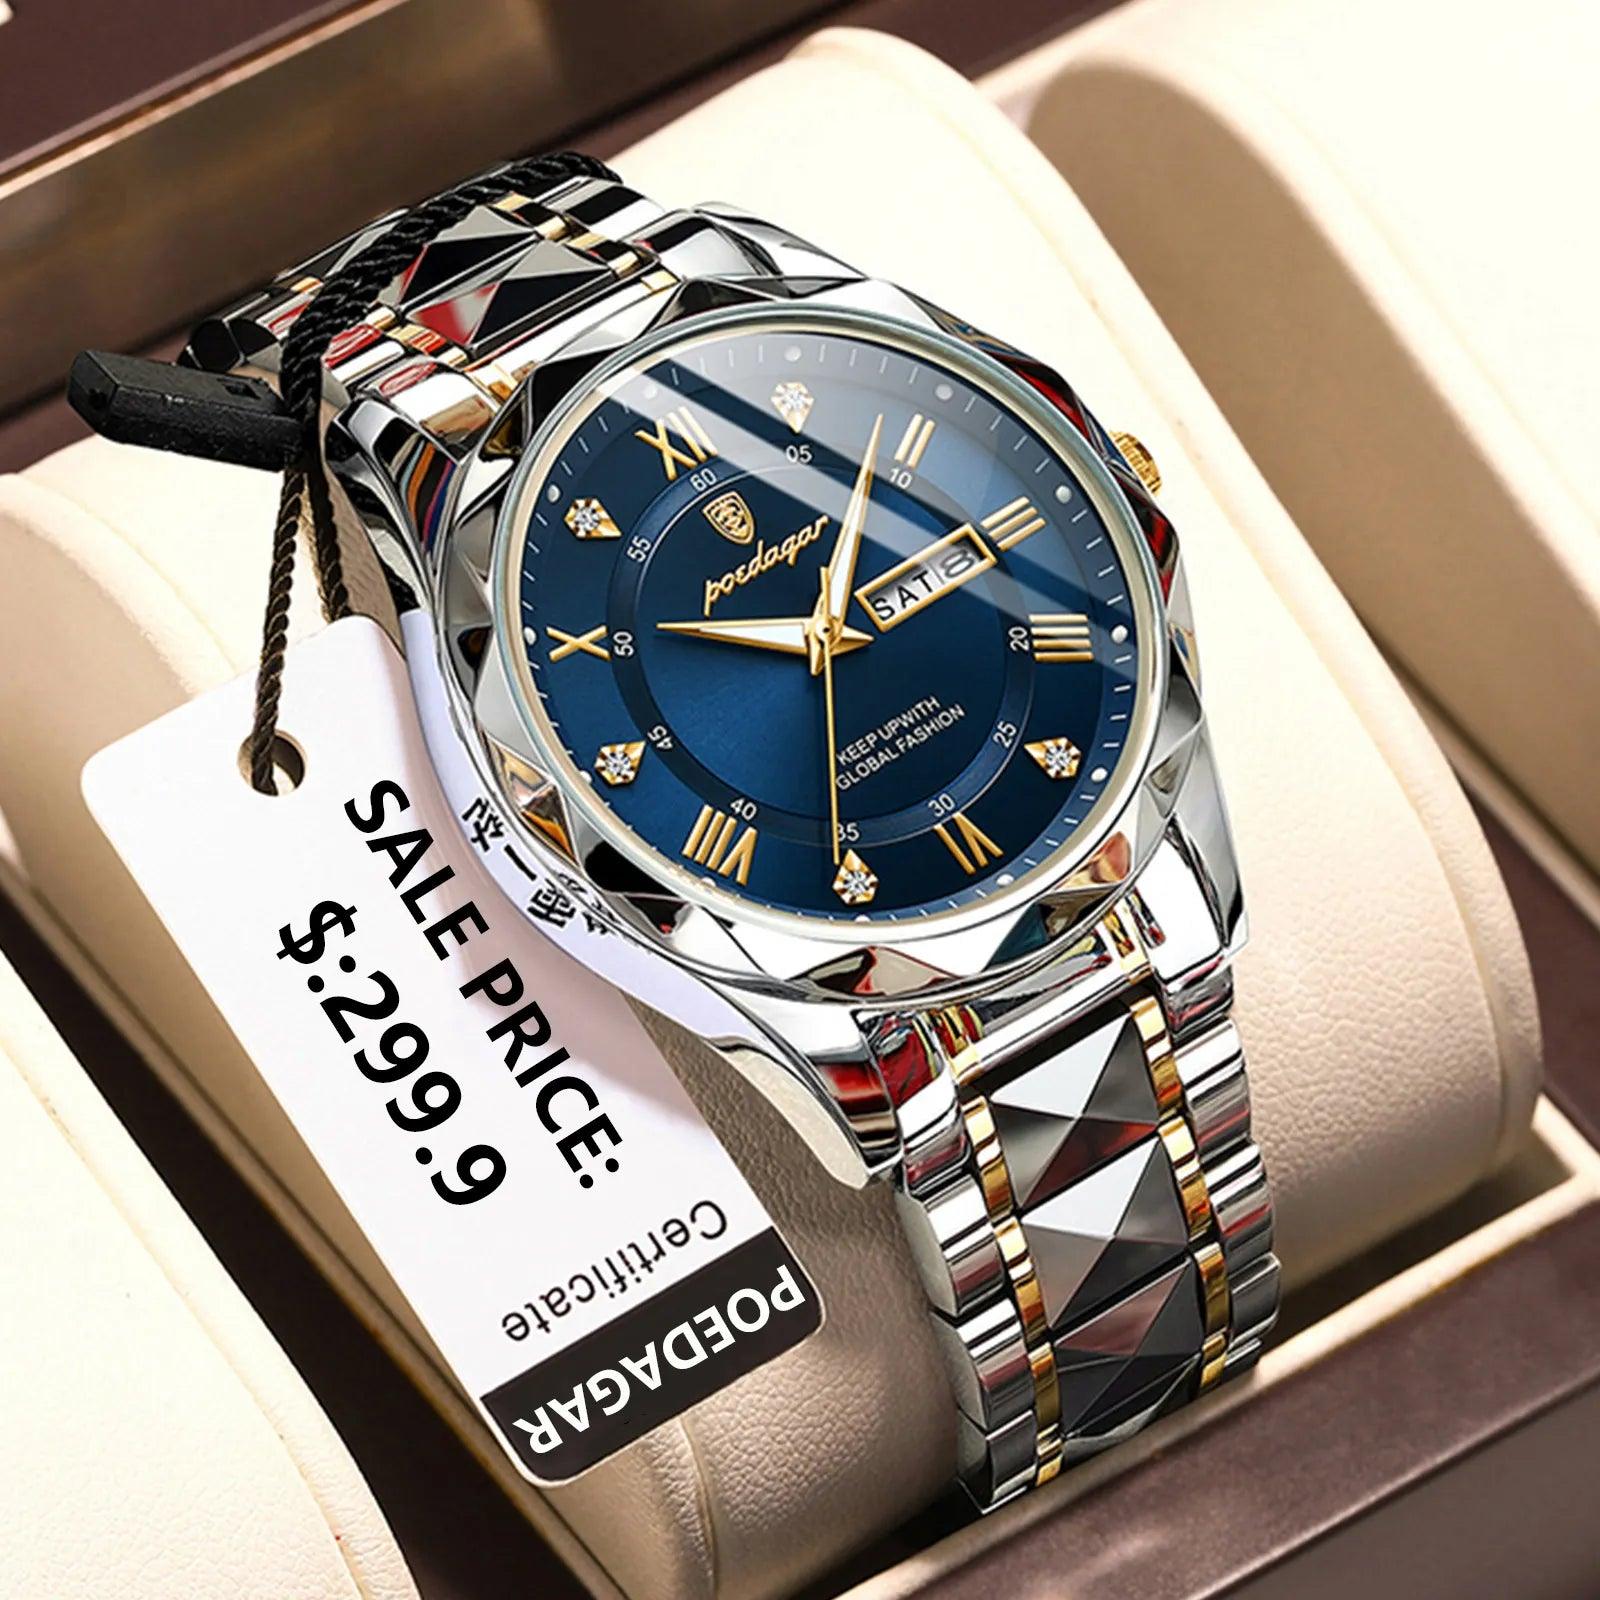 POEDAGAR Luxury Stainless Steel Quartz Men's Watch - Stylish Waterproof Timepiece  ourlum.com   